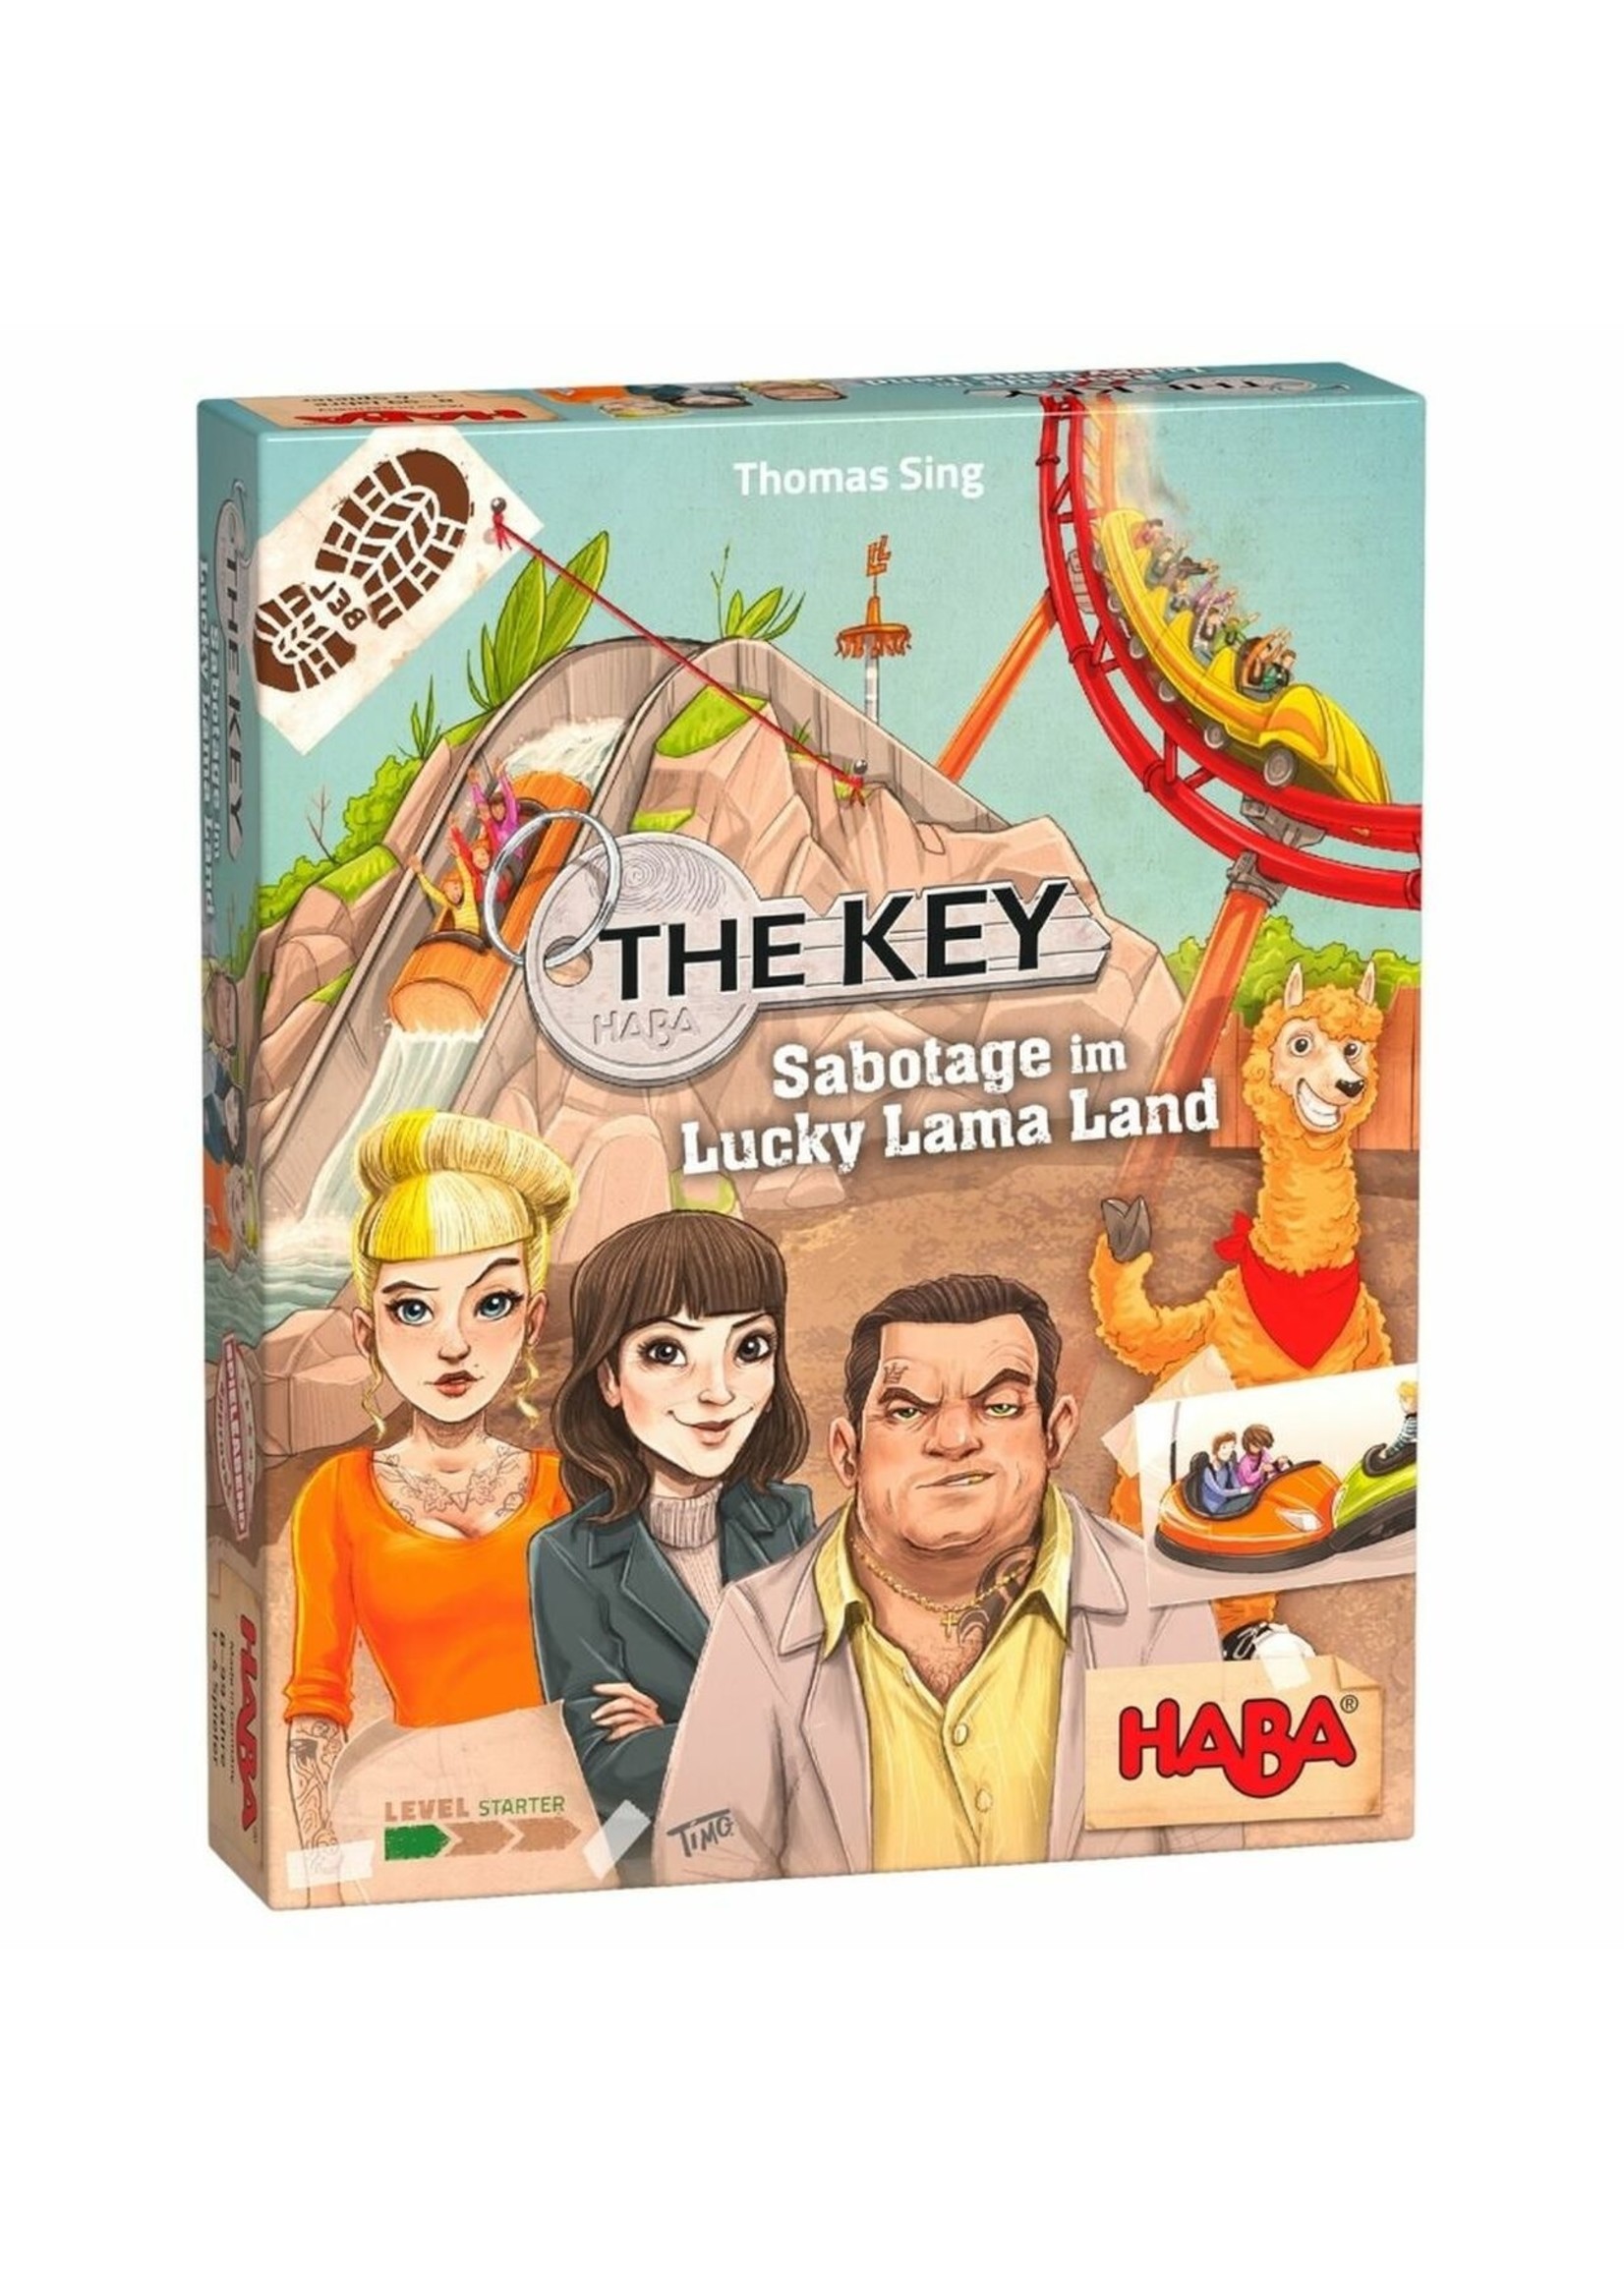 Haba The key - Sabotage at Lucky llama land (Bilingual)